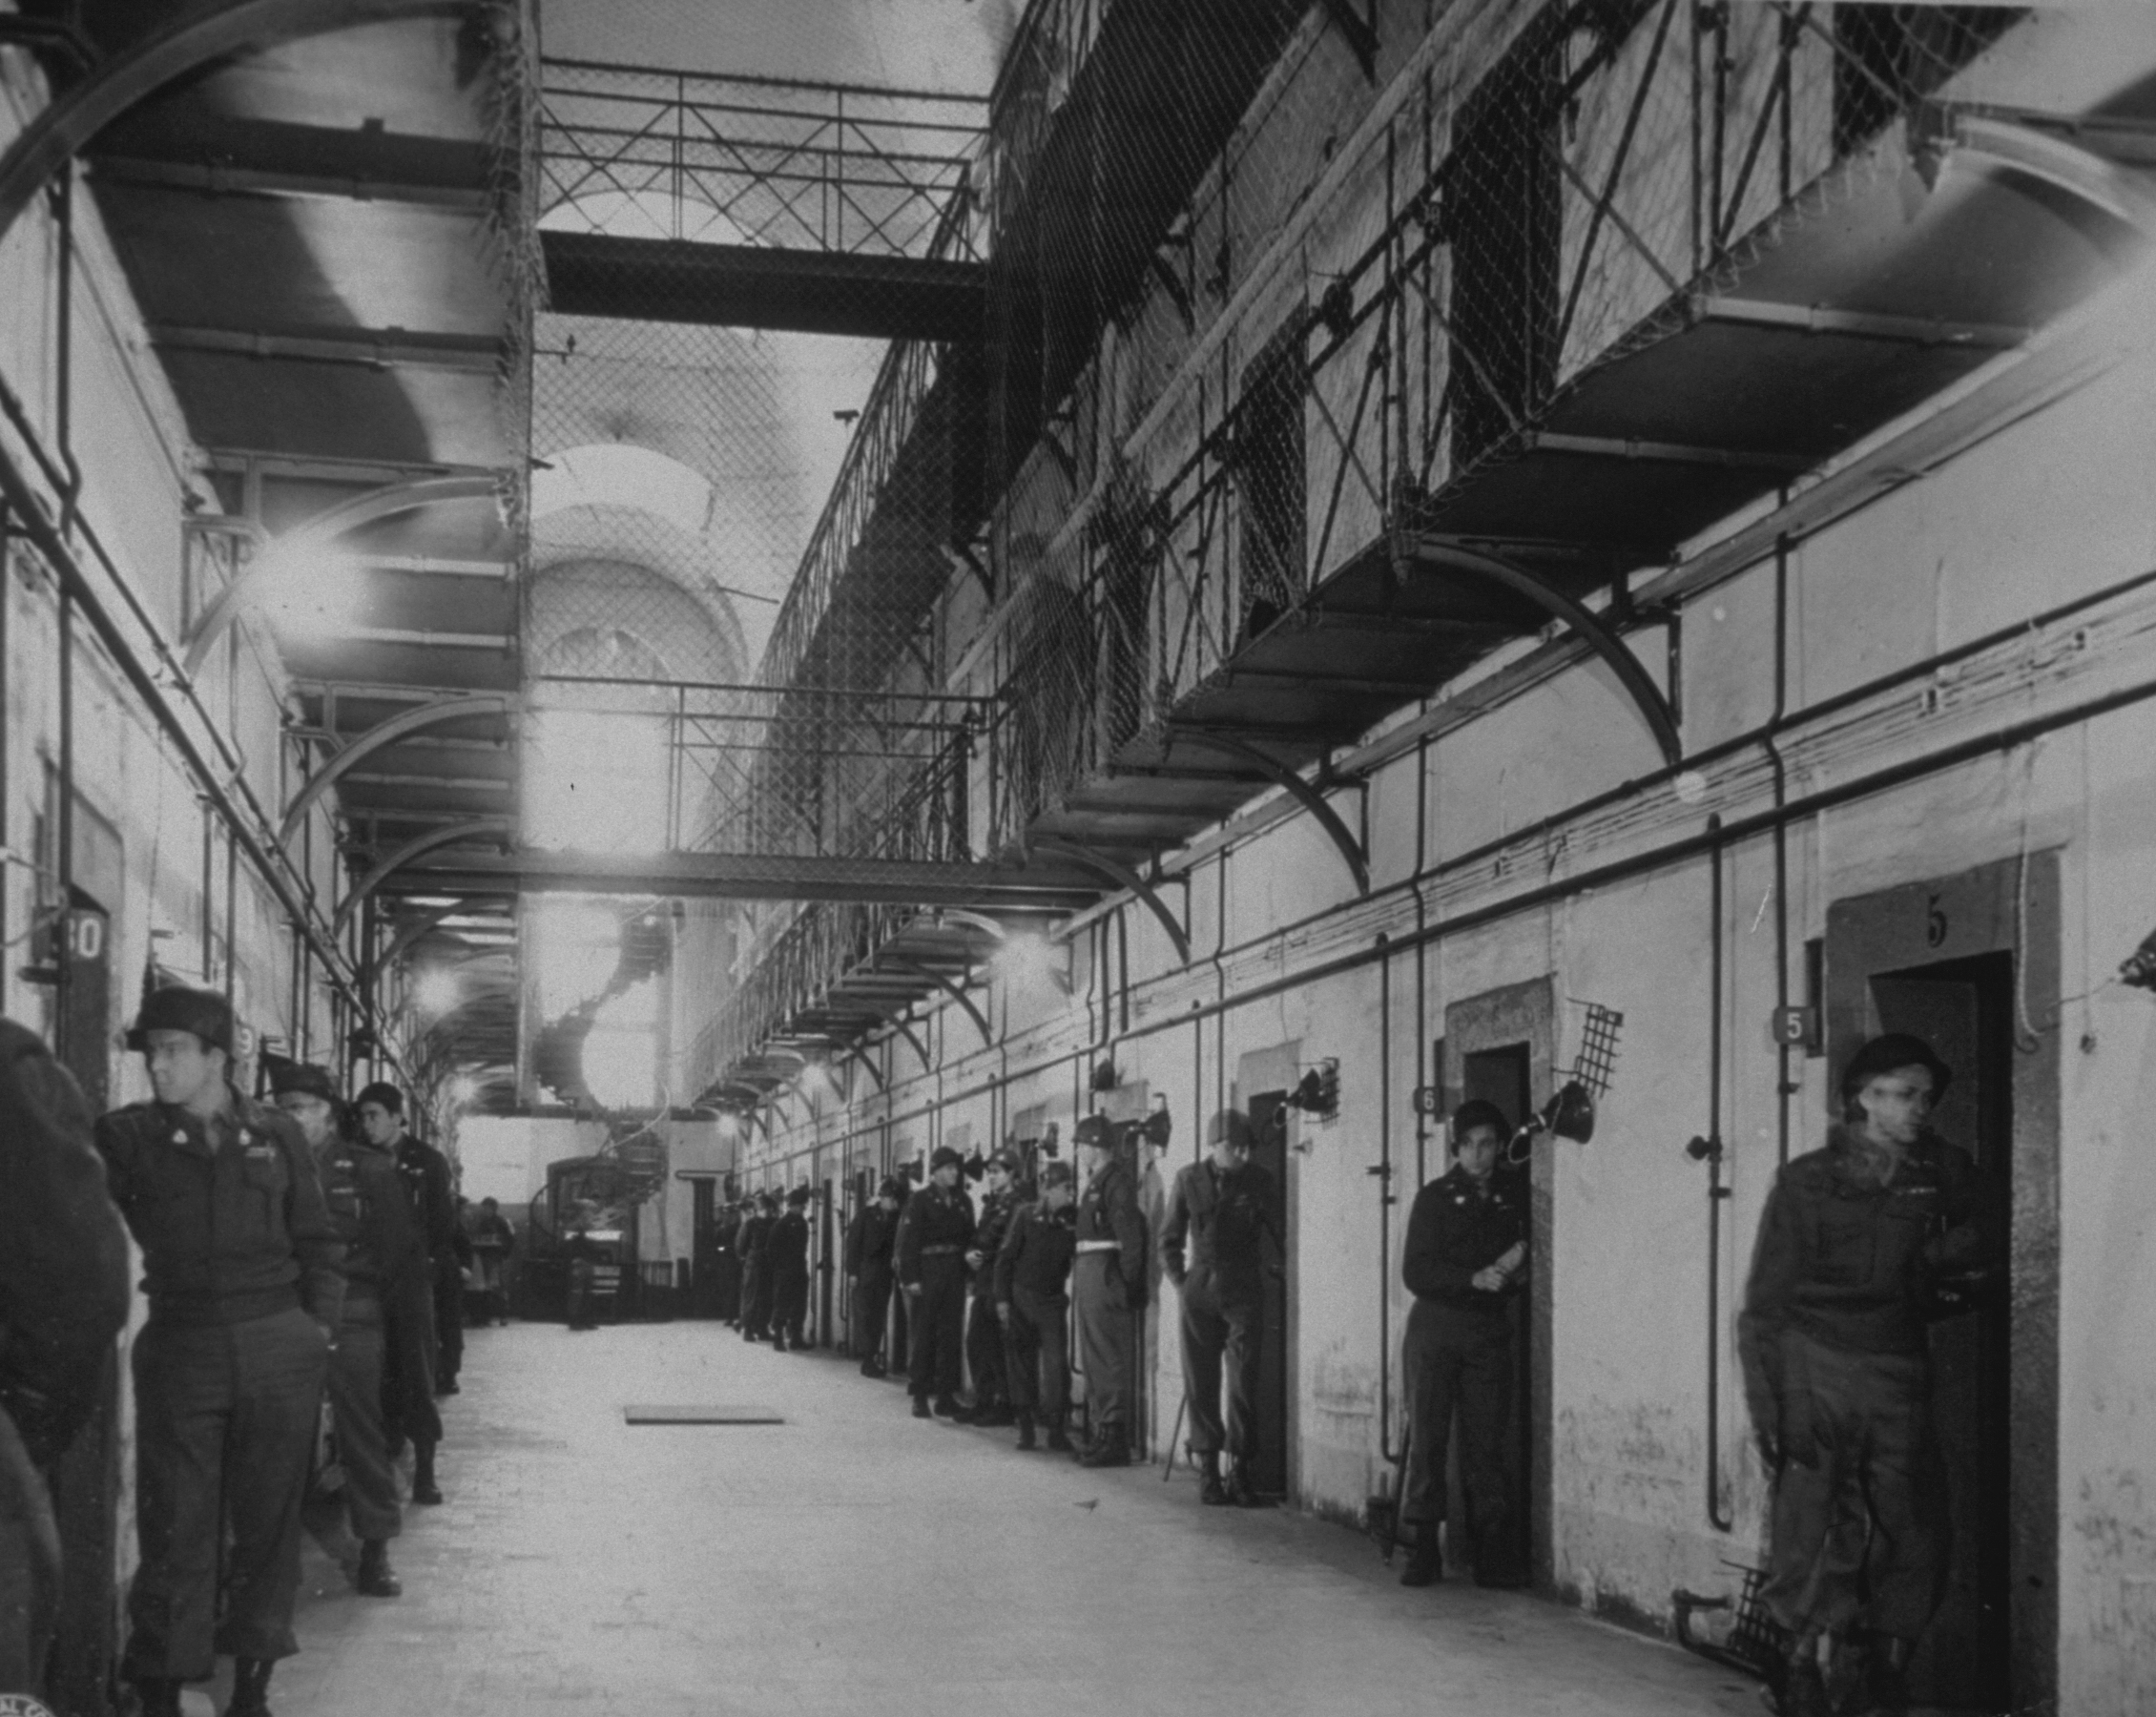 Ο αμερικανικός στρατός φρουρεί τα κελιά που κρατούν εγκληματίες πολέμου, συμπεριλαμβανομένων των Γκέρινγκ και Χες, στη φυλακή της Νυρεμβέργης.  Φωτογραφία © Getty Images / Keystone